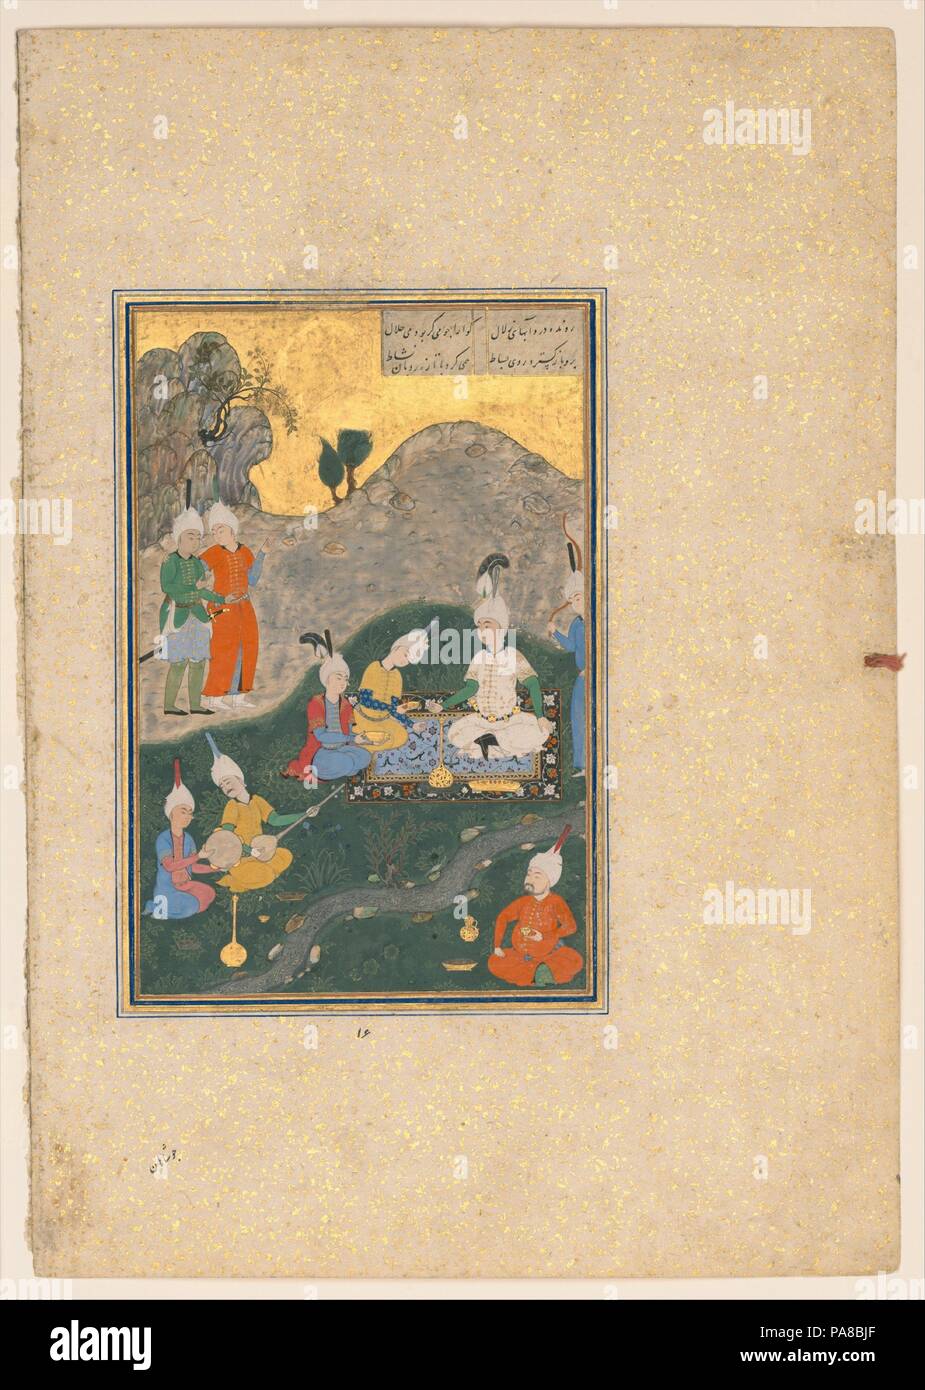 'Alexander' lors d'un banquet, d'un folio (Khamsa de Nizami Quintet). Auteur : Nizami (Ilyas Abu Muhammad Nizam al-Din de la Ganja) (probablement 1141-1217). Calligraphe : Sultan Muhammad Nur (ca. 1472-ca. 1536). Dimensions : Peinture : H. 6 11/16 in. (17 cm) W. DE 4 1/2 po. (11,5 cm)Page : H. 12 1/2 (31,7 cm) W. 8 3/4 in. (22,2 cm)Mat : H. 19 1/4 in. (48,9 cm) 14 1/4 in. W. (36,2 cm). Date : du 931 de l'hégire/A.D. 1524-25. La Khamsa de Nizami, écrits entre 1298 et 1302, est une œuvre canonique de la littérature persane. L'un des cinq poèmes dans le livre raconte l'histoire d'Alexandre le Banque D'Images